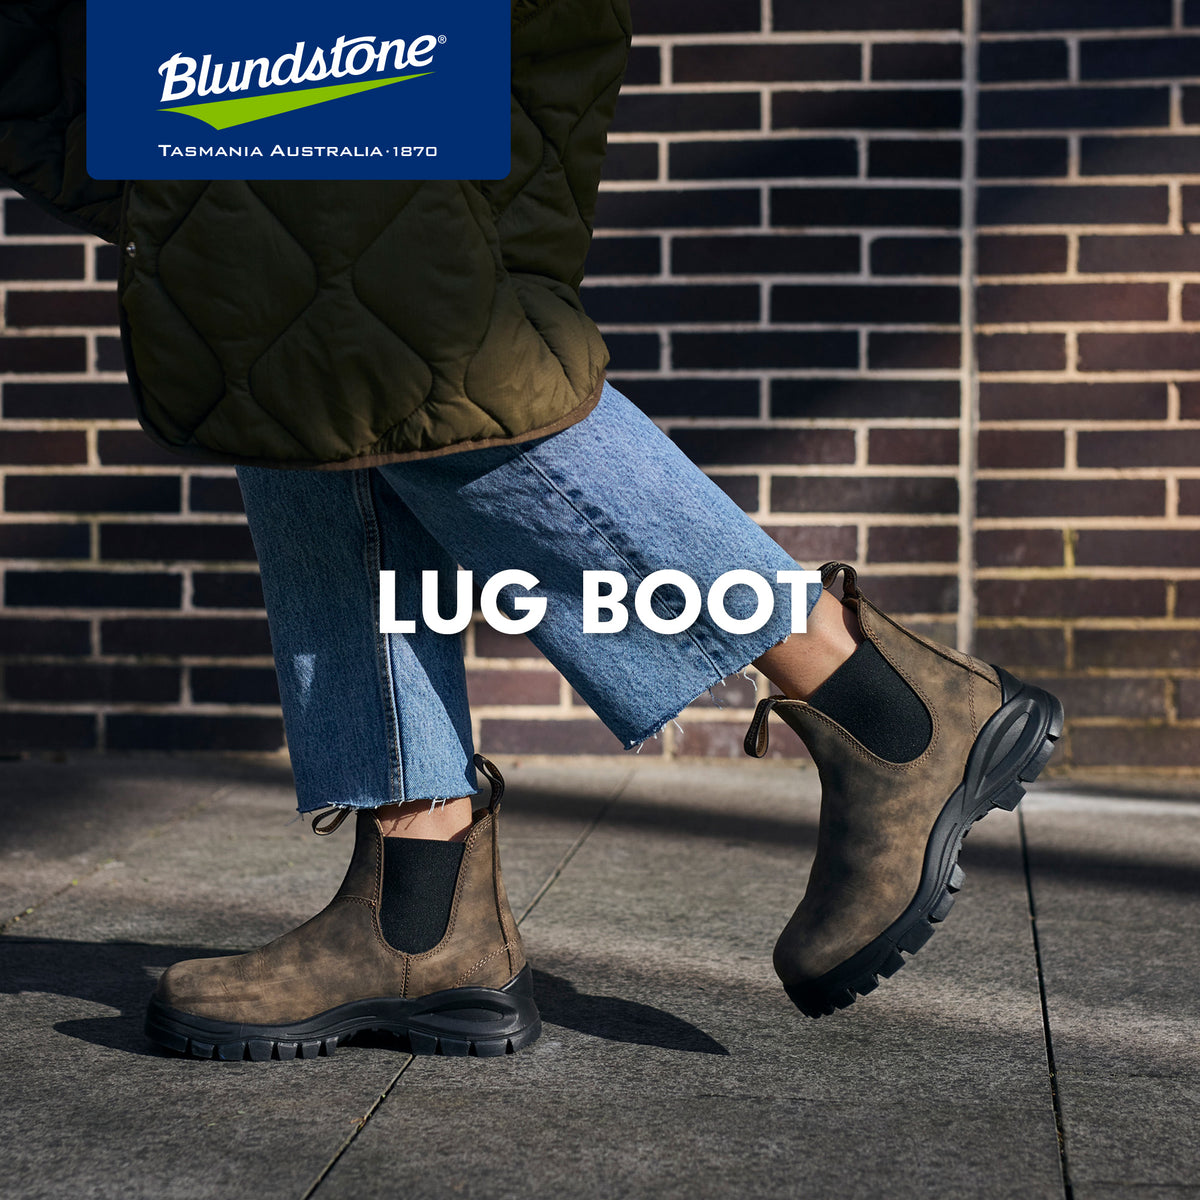 Blundstone Lug boot 24.5cm ブランドストーンラグブーツご迷惑をおかけしました